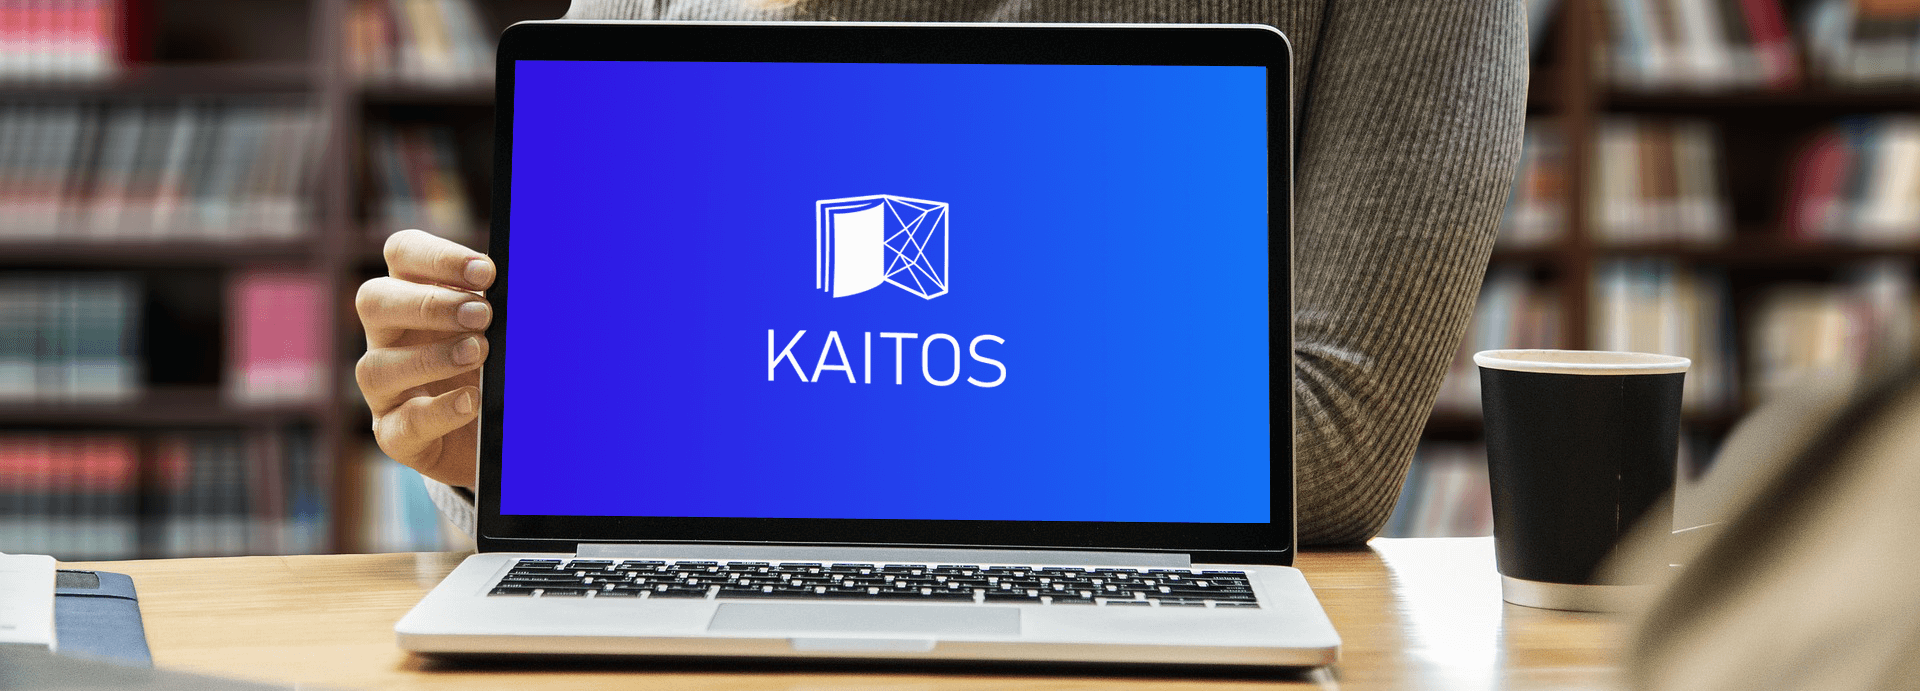 Obrázek pro software kaitos - umělá inteligence do knihoven.